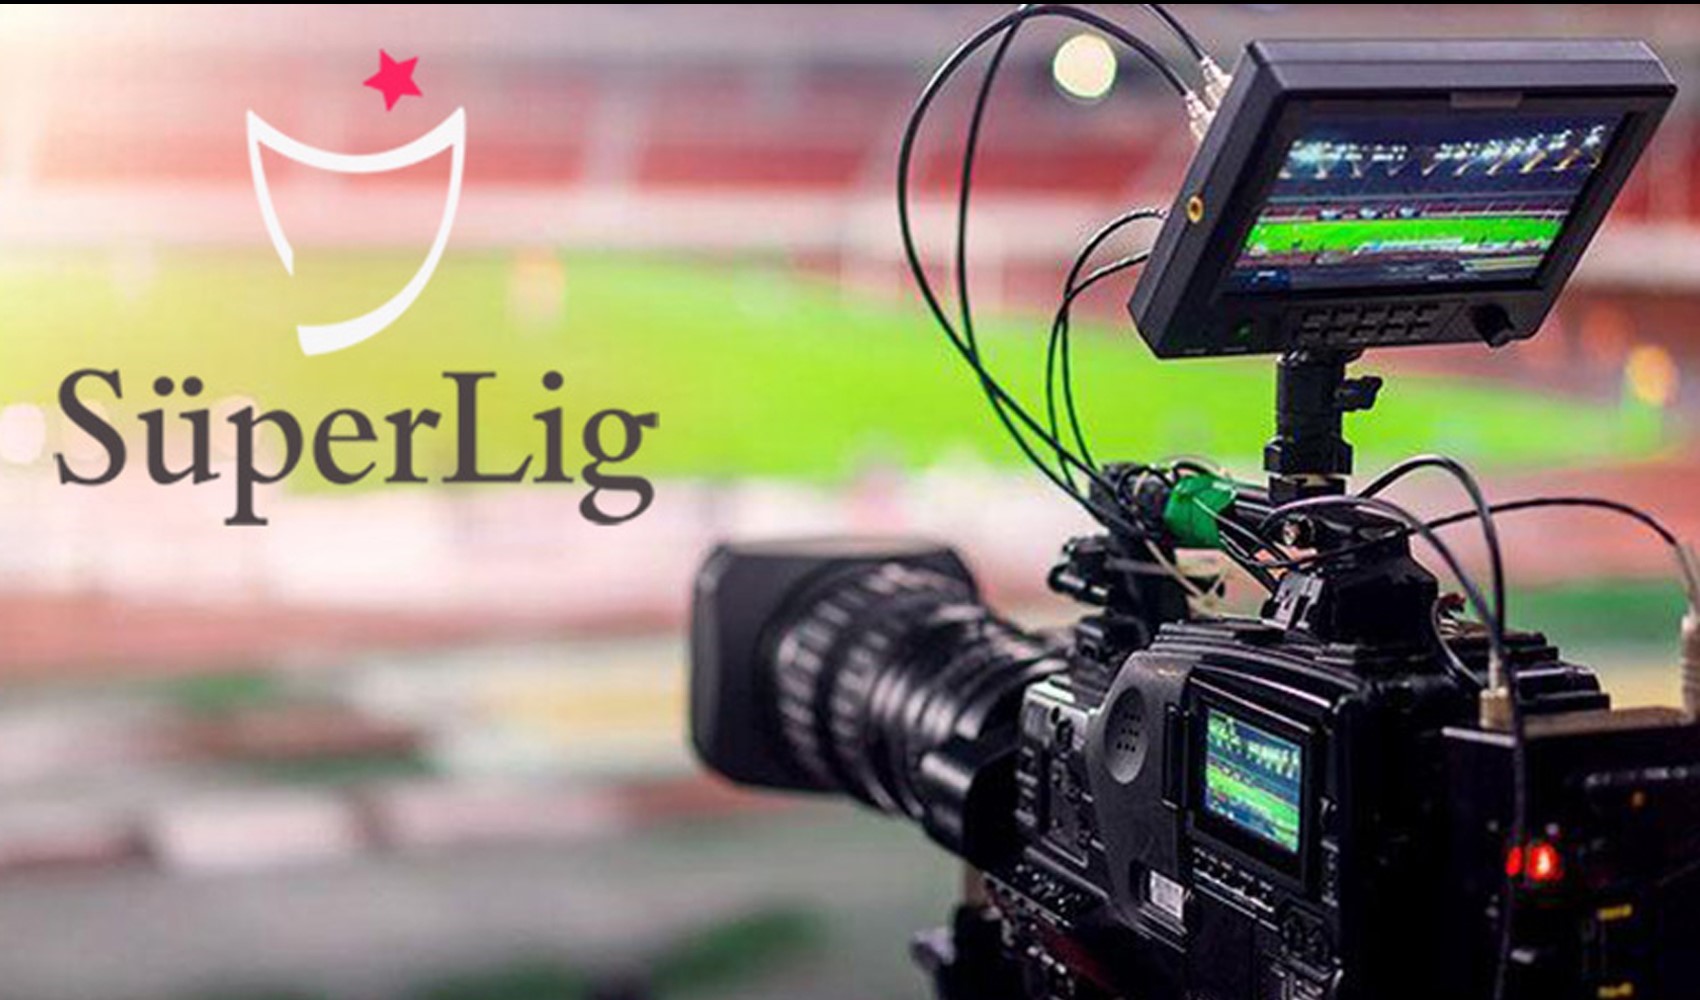 Katarlı beIN Sports'un aldığı Süper Lig yayın ihalesinin ayrıntıları ortaya çıktı! Ödeme planı nasıl olacak?